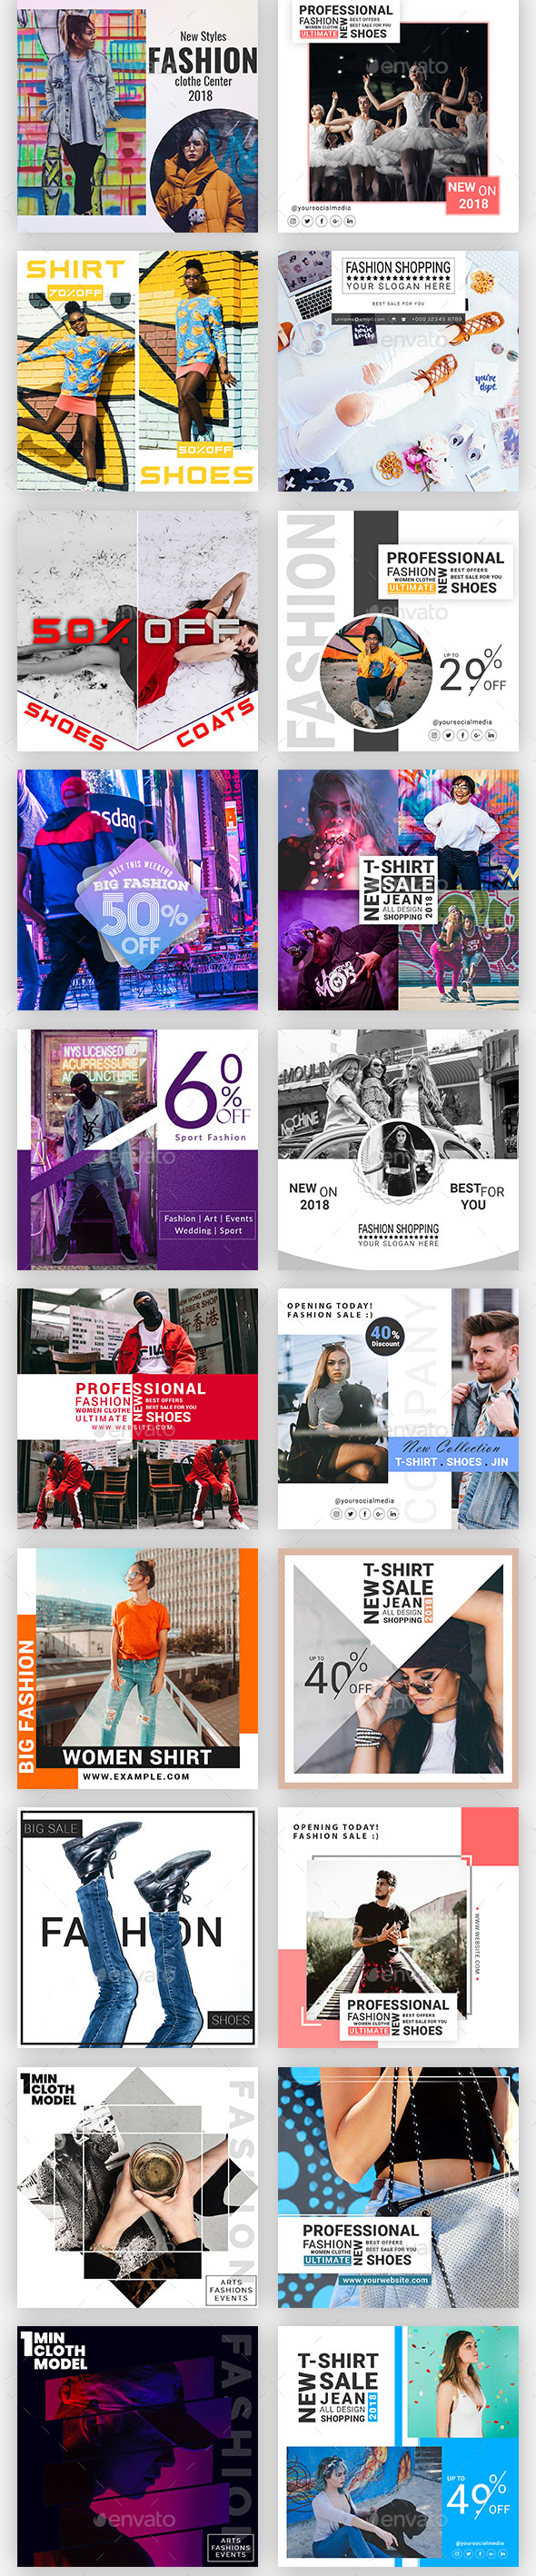 时尚简约的Instagram故事模板蚂蚁素材精选合辑 Instagram Post & Stories [psd,jpg]插图(5)